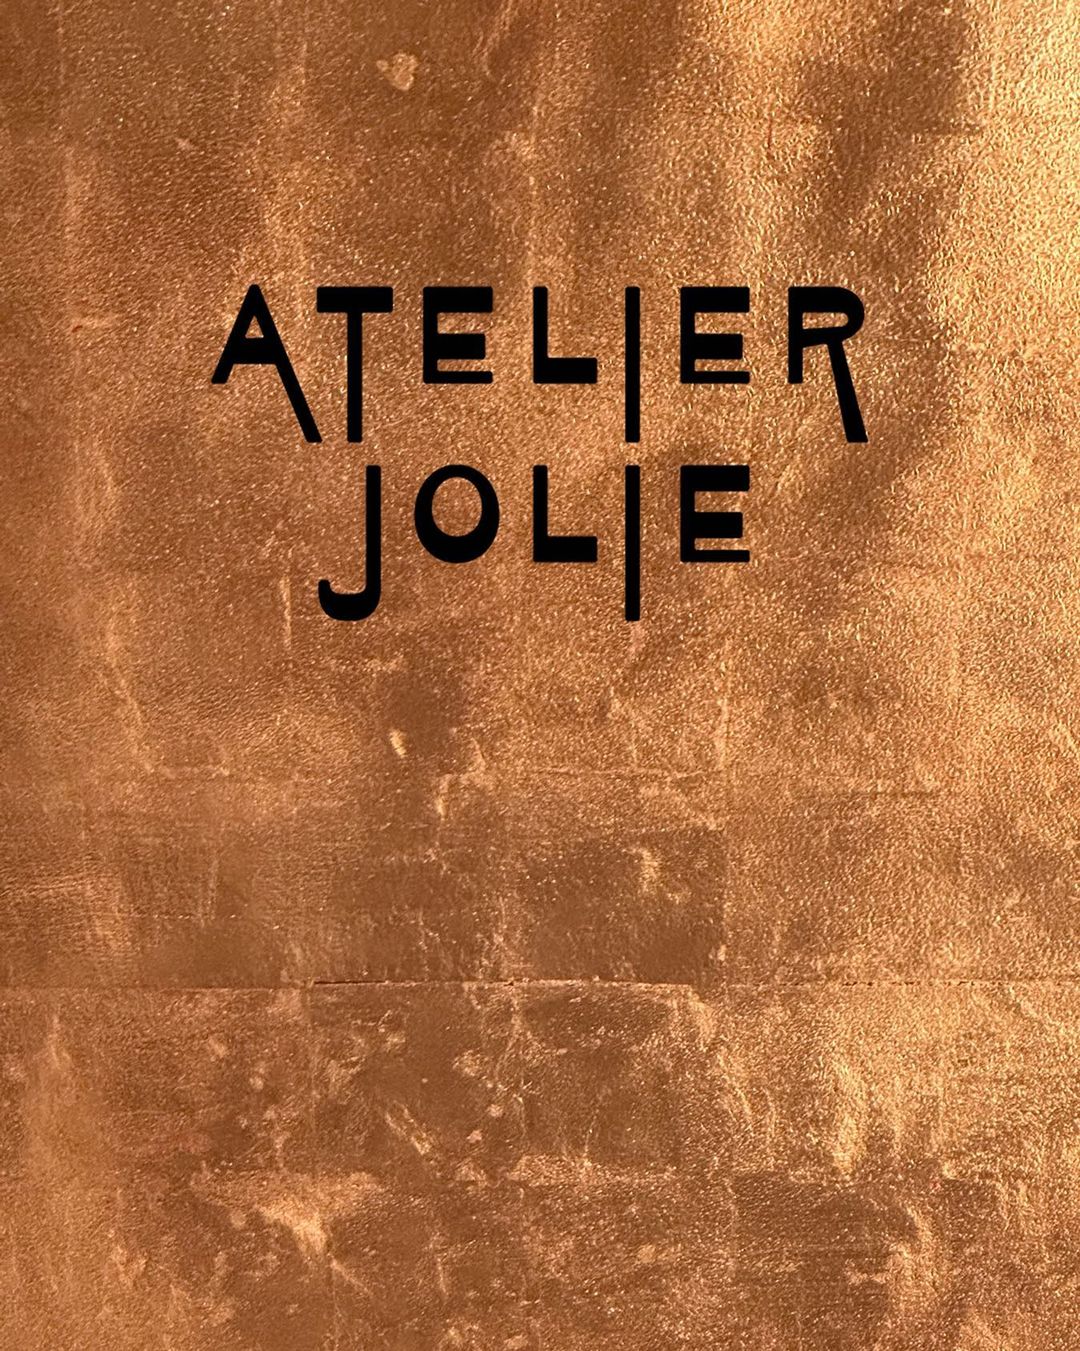 Анджеліна Джолі відкриває модний бренд Atelier Jolie